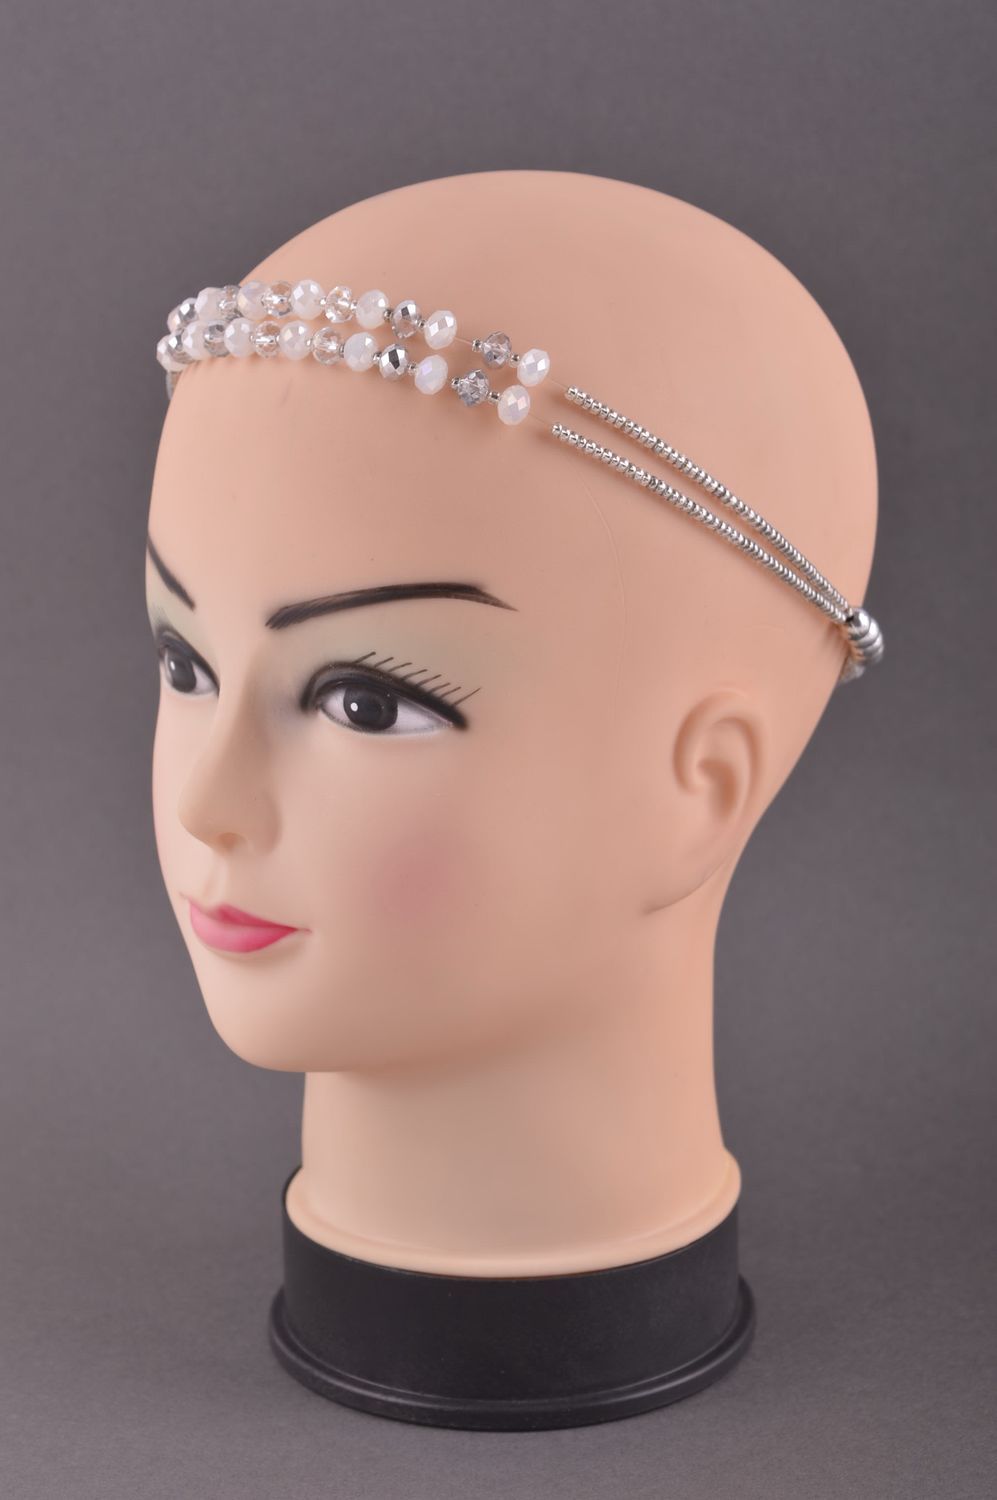 Аксессуар для волос хэнд мэйд полоска для волос ободок на голову с кристаллами фото 1